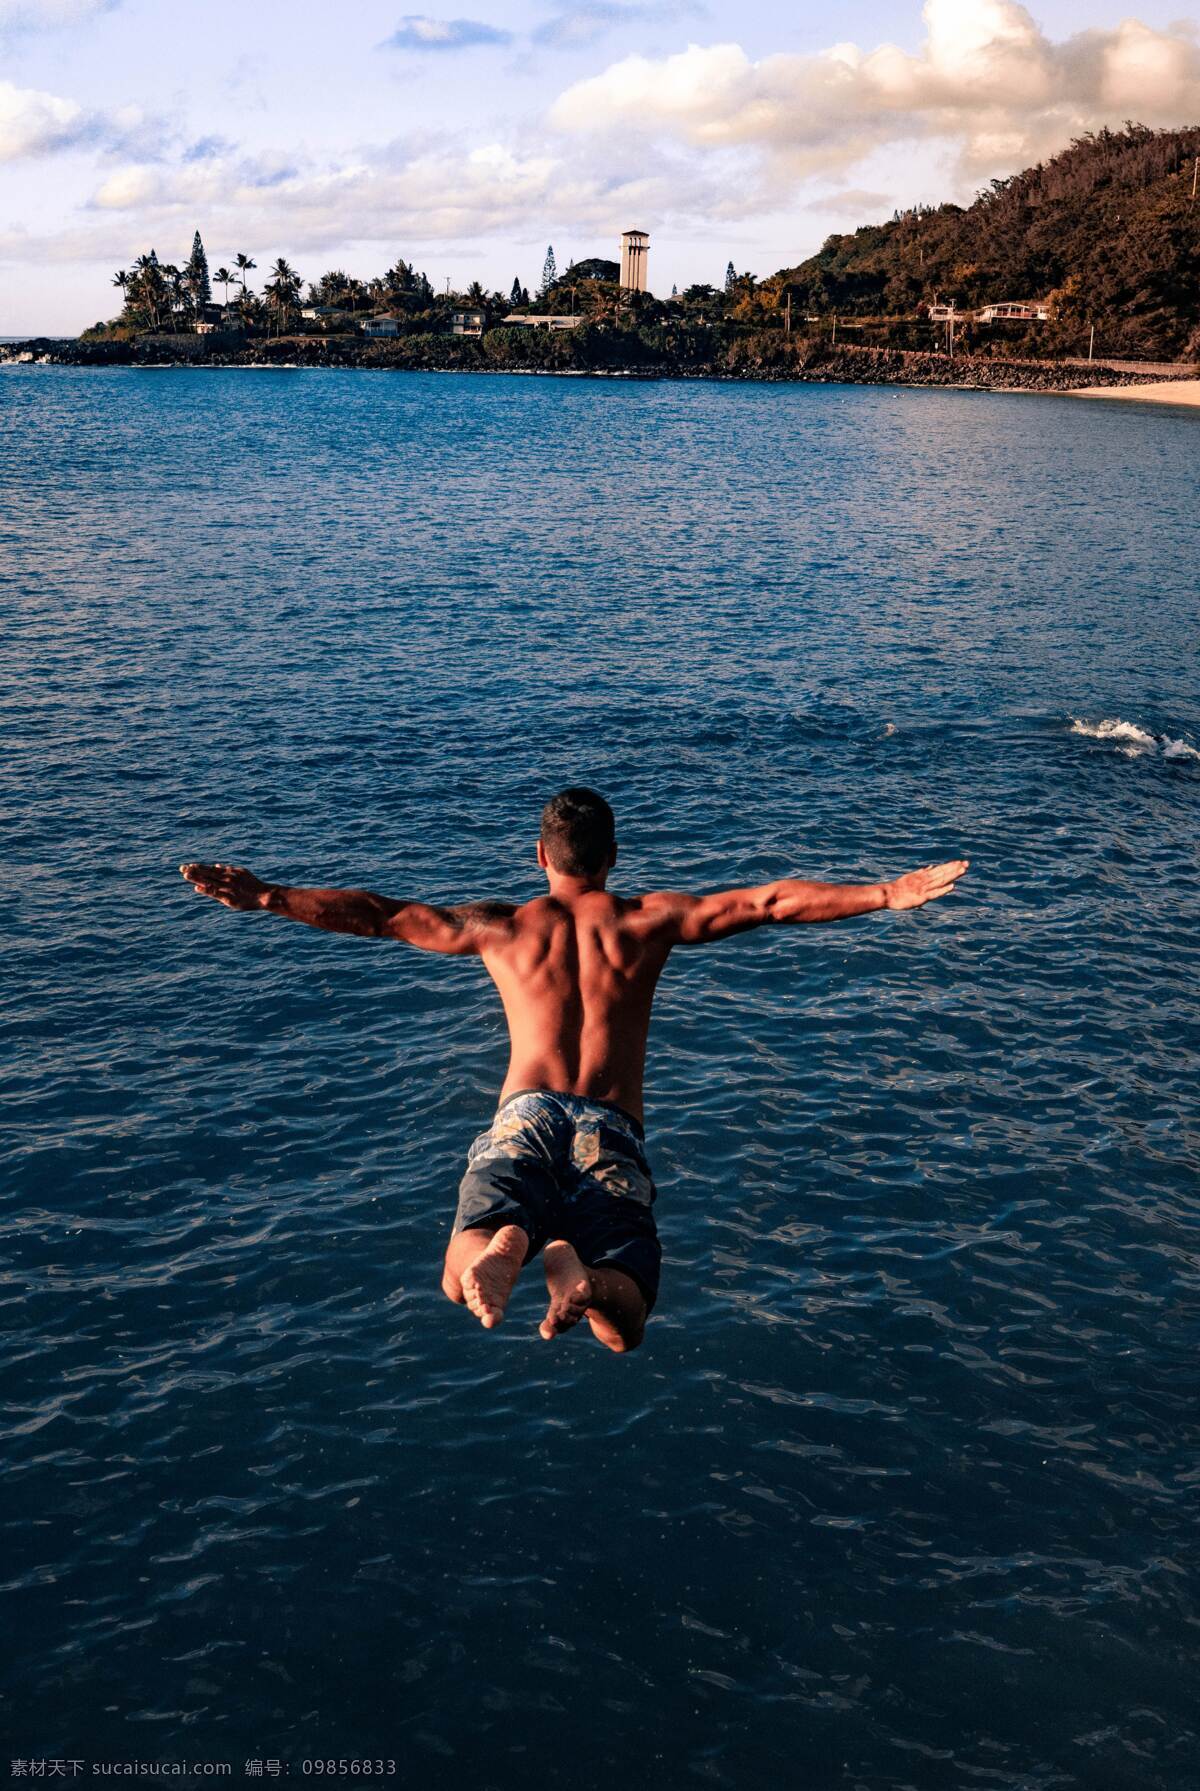 跳水 男性 背影 挑战 人 运动 极限 水 湖水 沙滩 海 跳 运动员 水纹理 度假村 沙 路 建筑 人物 人物图库 男性男人